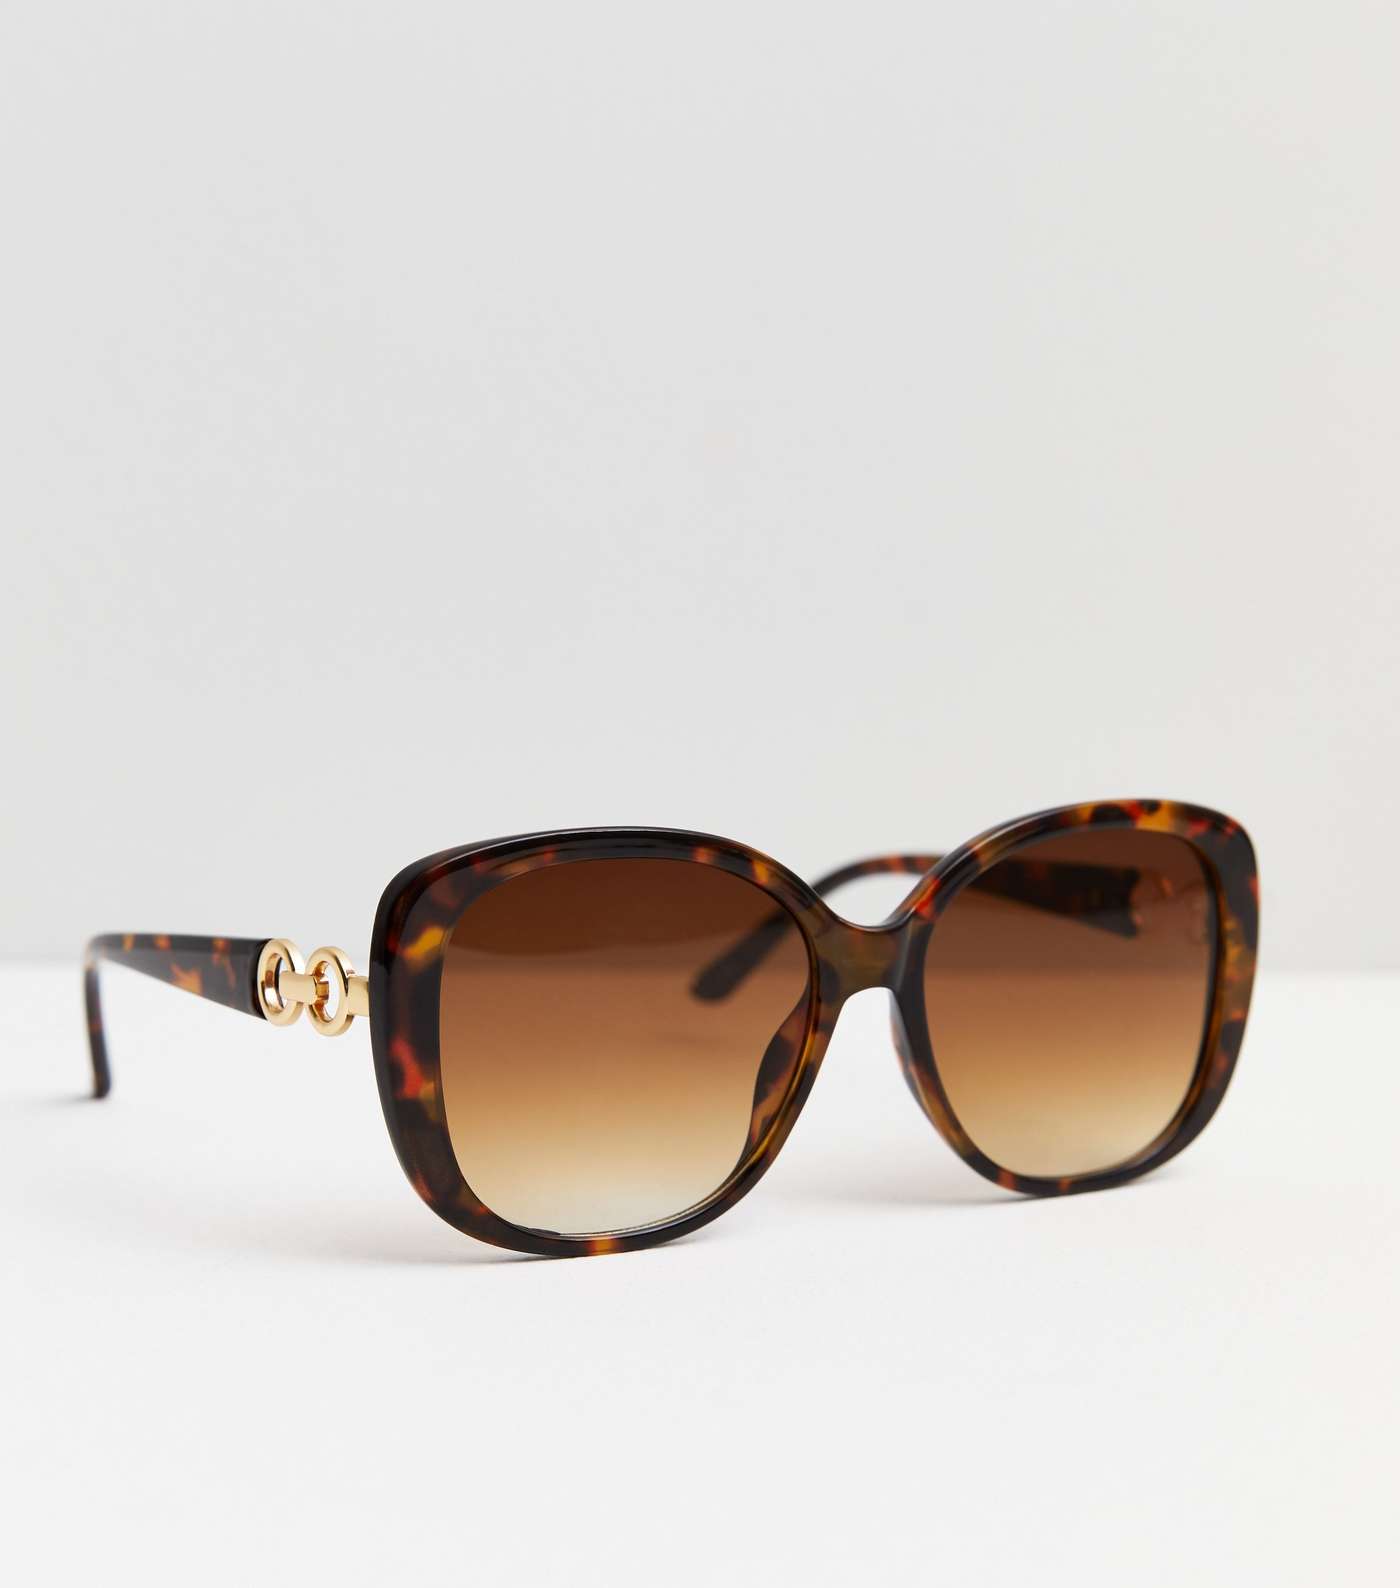 Dark Brown Tortoiseshell Effect Chain Oversized Sunglasses Image 2